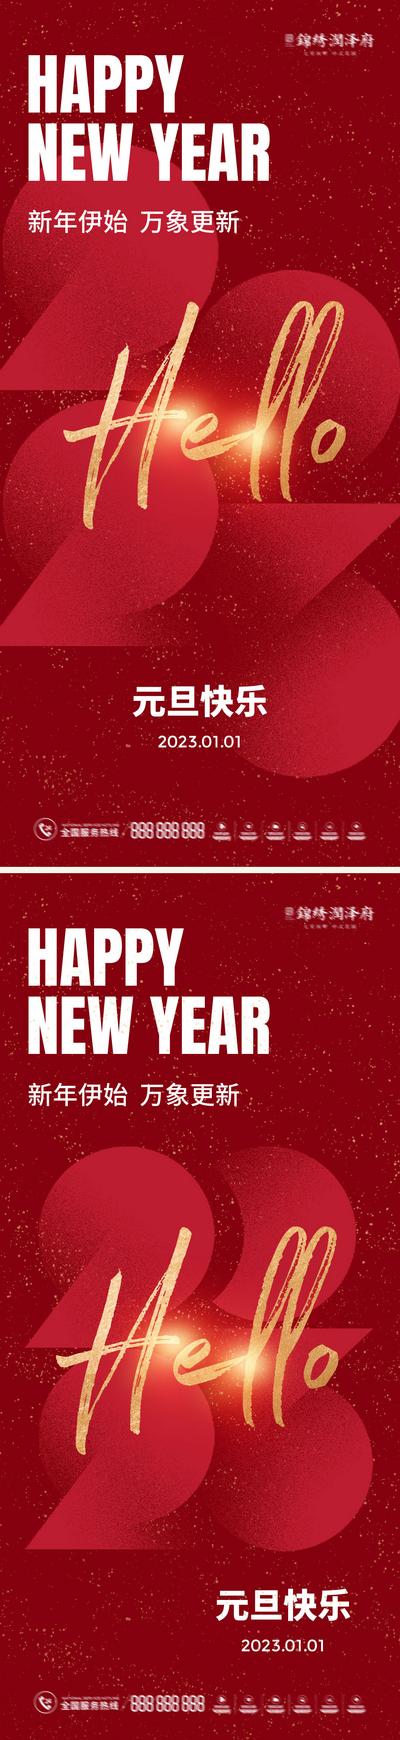 南门网 海报 元旦节 公历节日 2023 数字 红色 简约 系列